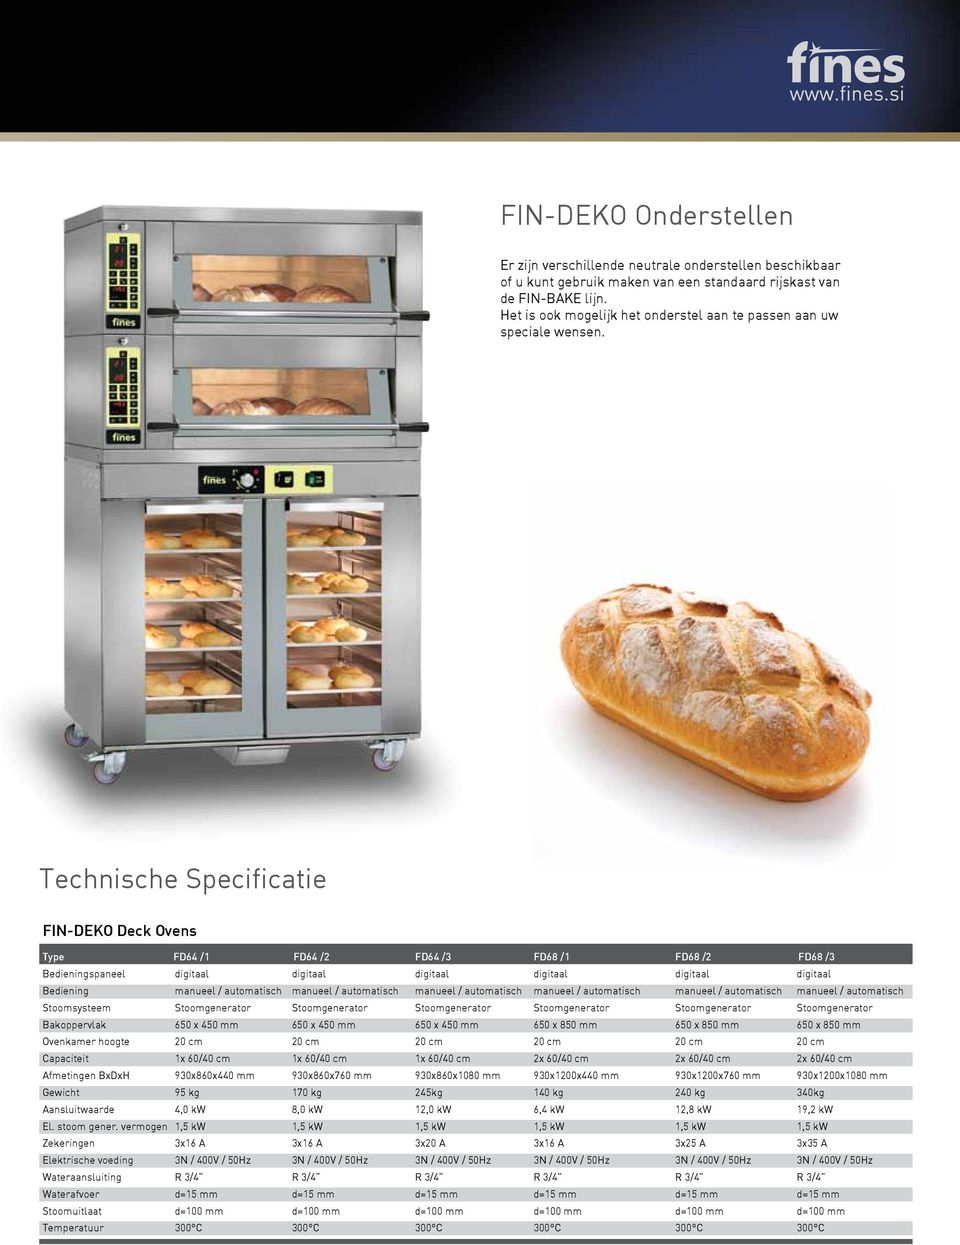 Technische Specificatie FIN-DEKO Deck Ovens Type FD64 /1 FD64 /2 FD64 /3 FD68 /1 FD68 /2 FD68 /3 Bedieningspaneel digitaal digitaal digitaal digitaal digitaal digitaal Bediening manueel / automatisch